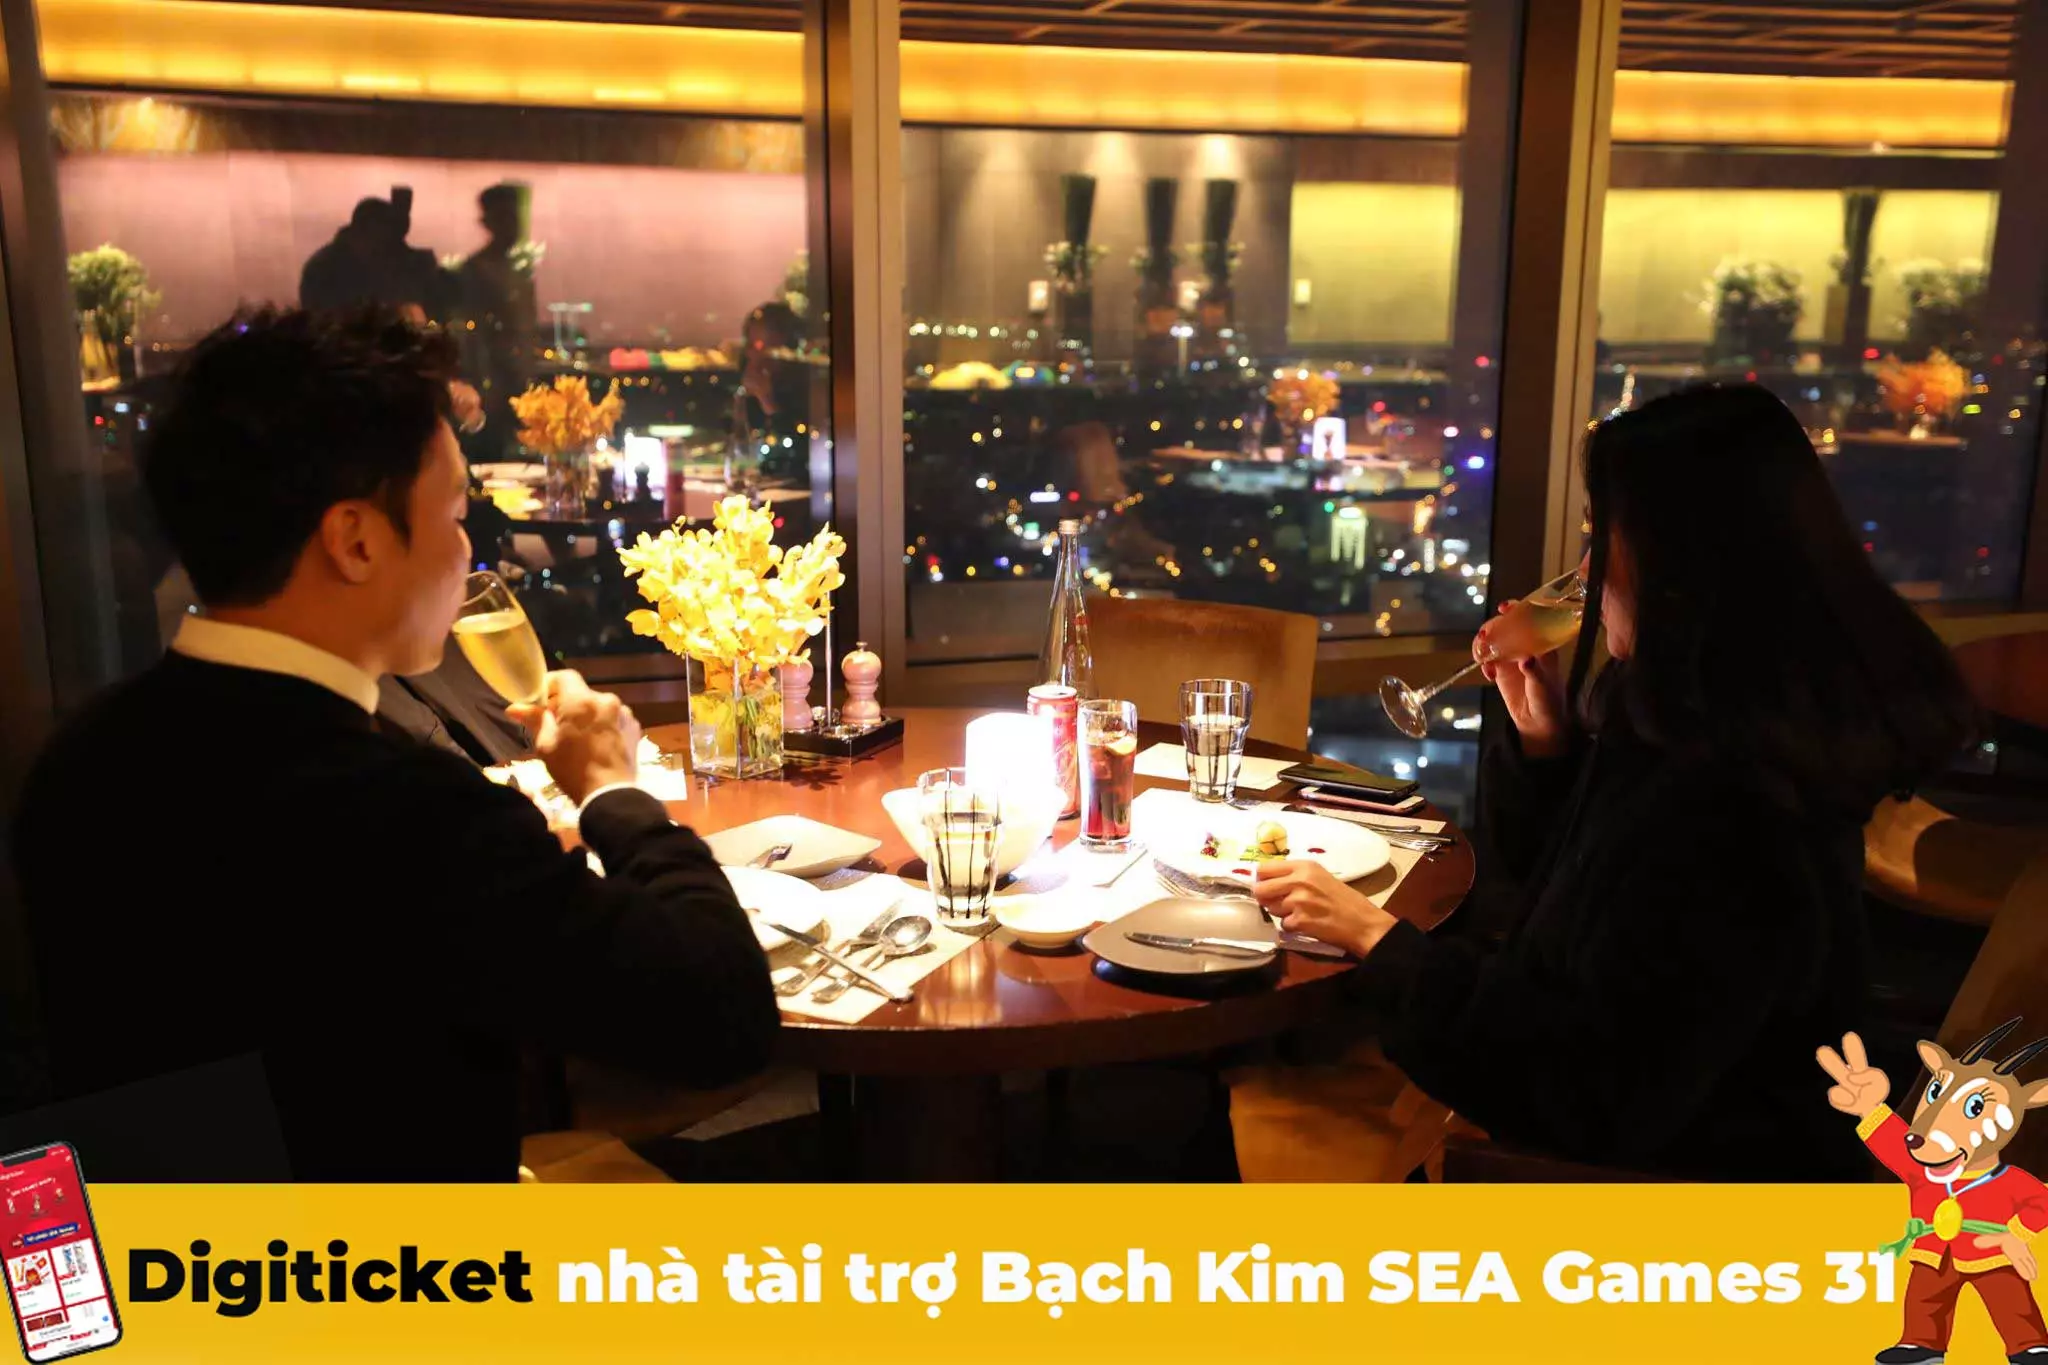 Ảnh: Grill63 - nhà hàng tại Hà Nội có view đẹp